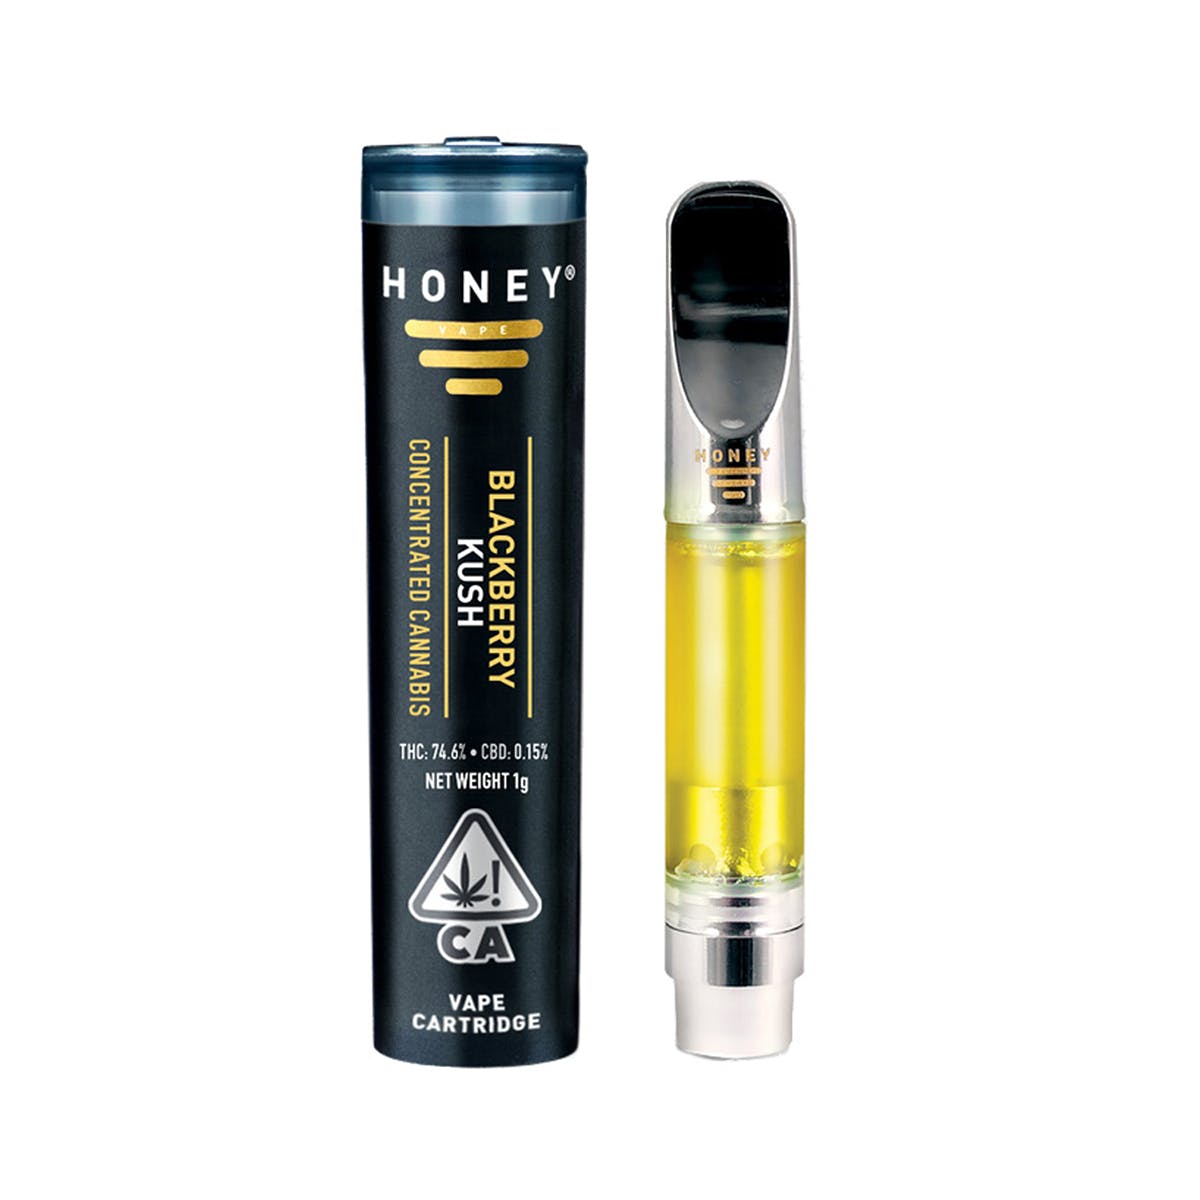 Honey® Premium Cartridge, Blackberry Kush